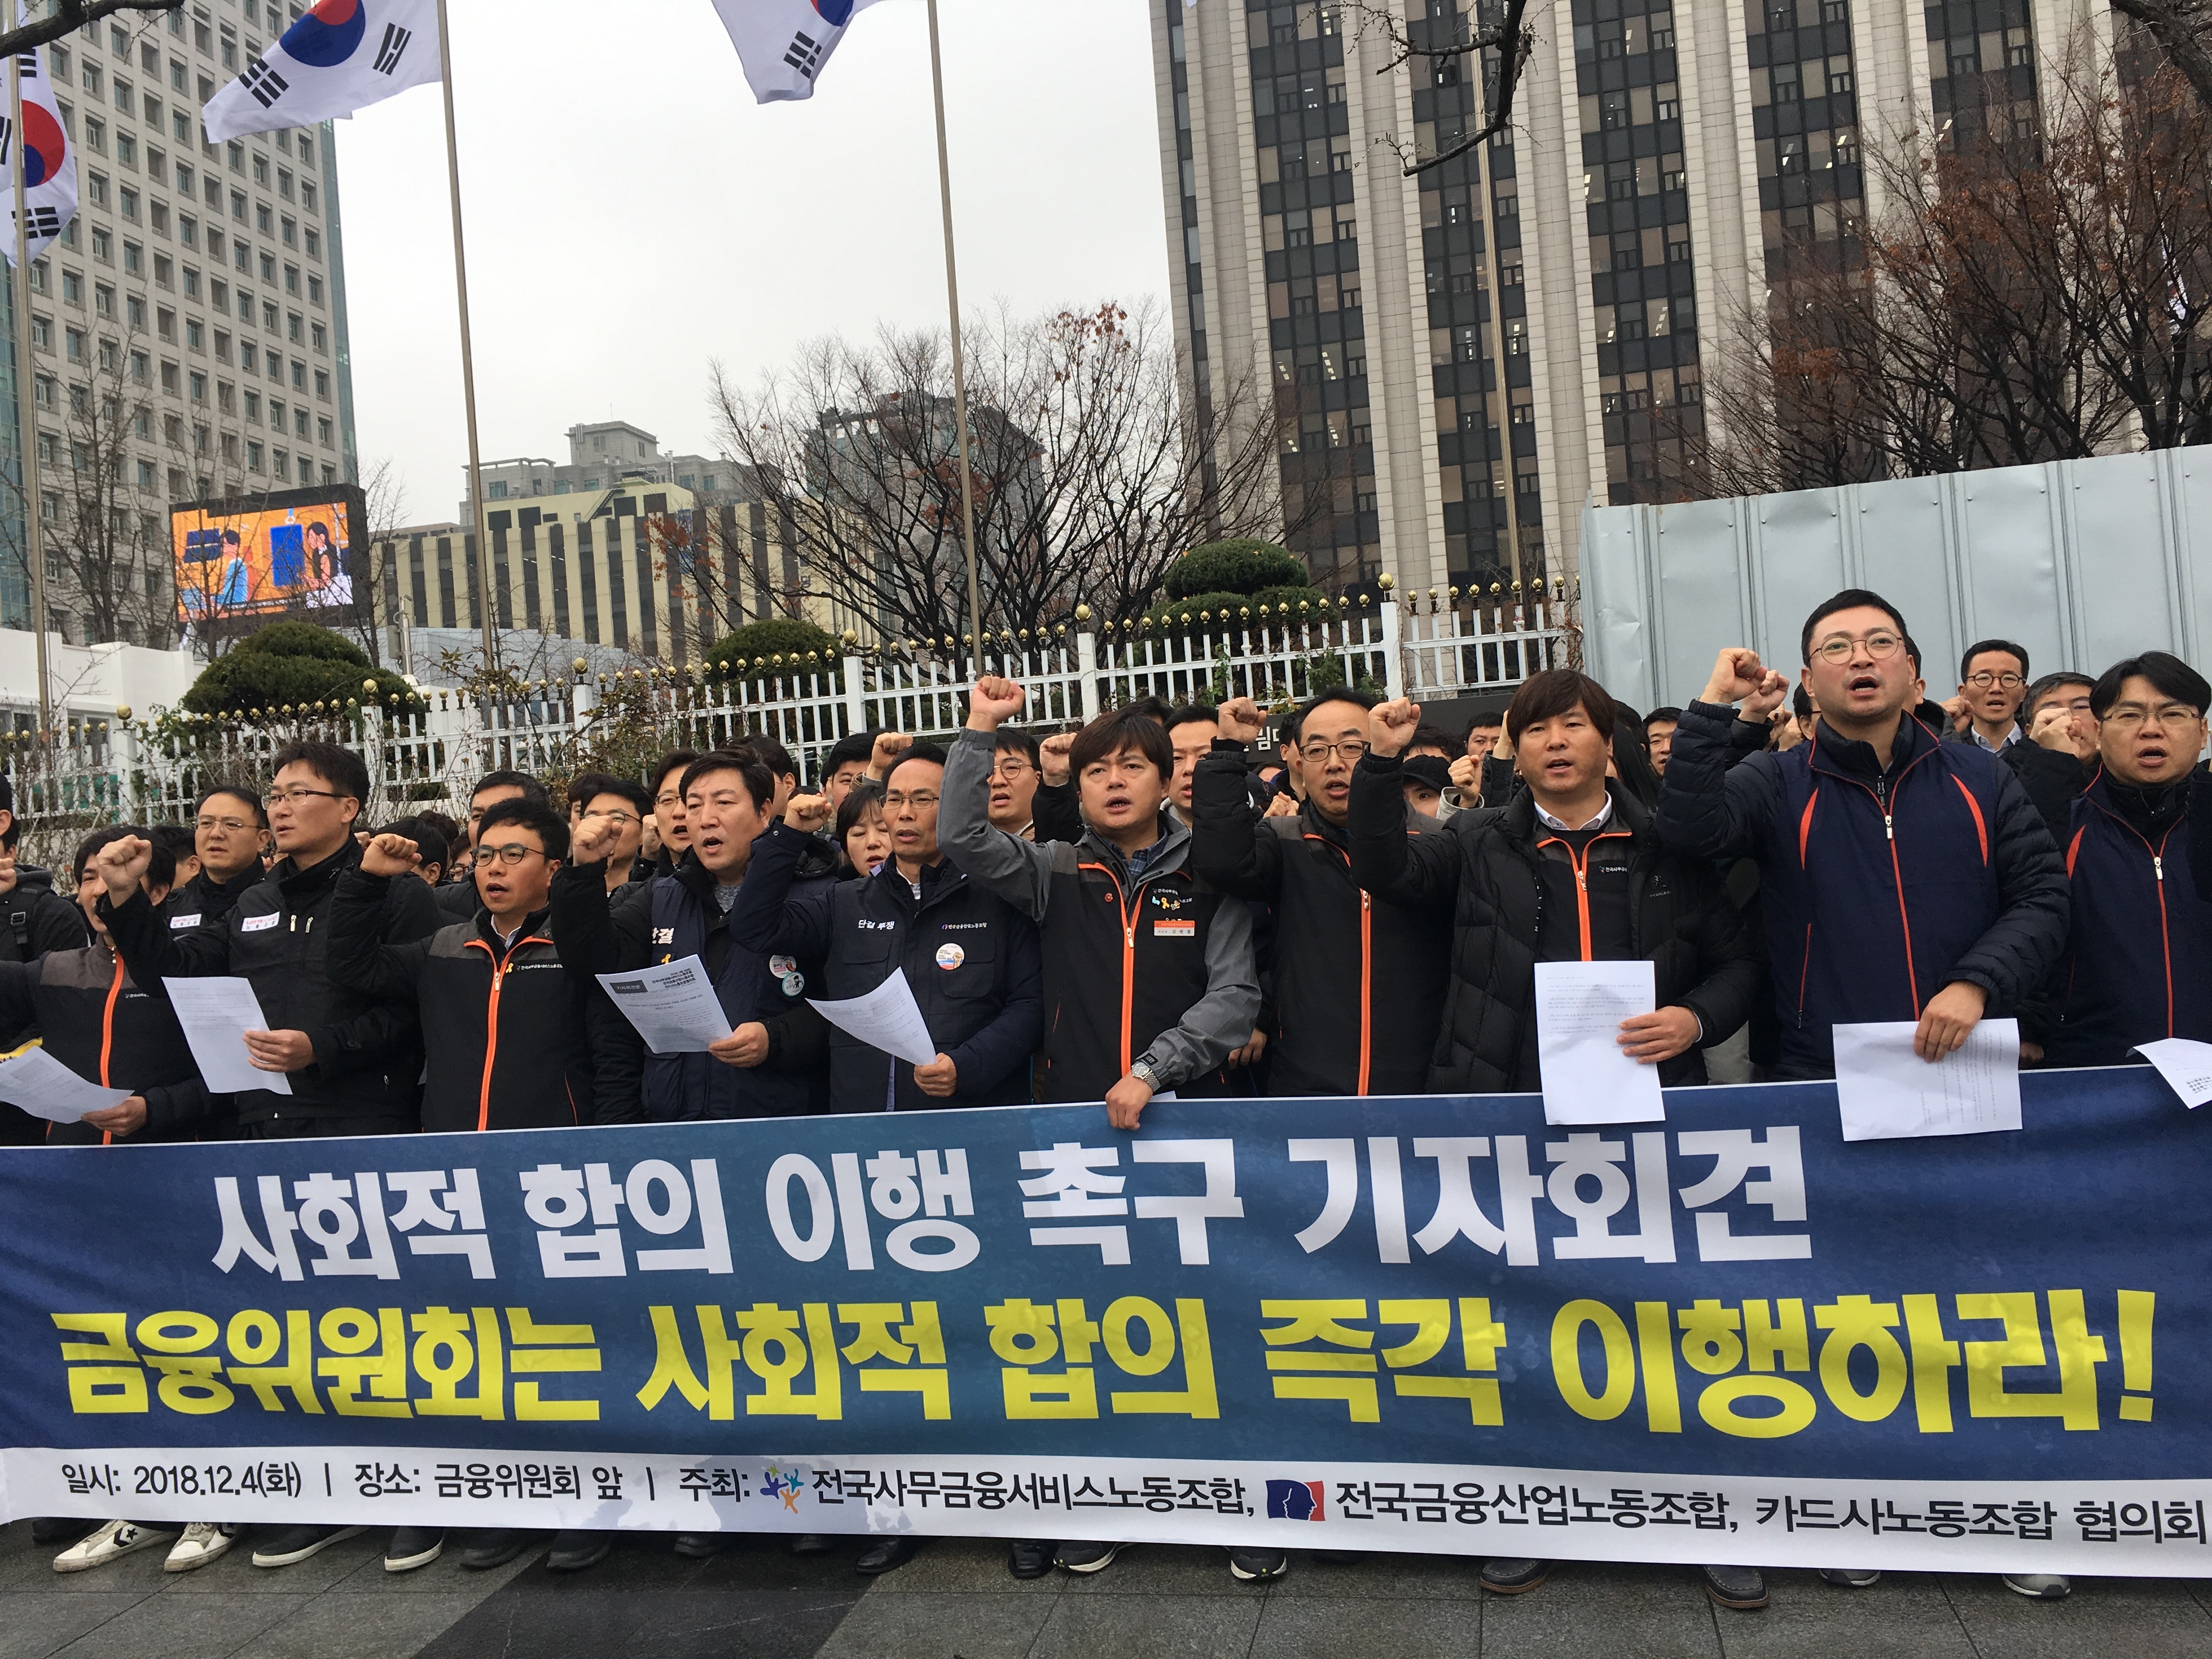 지난해 12월 카드노조는 서울 광화문 정부종합청사 앞에서 기자회견을 진행하고 있다. / 사진 = 유선희 기자